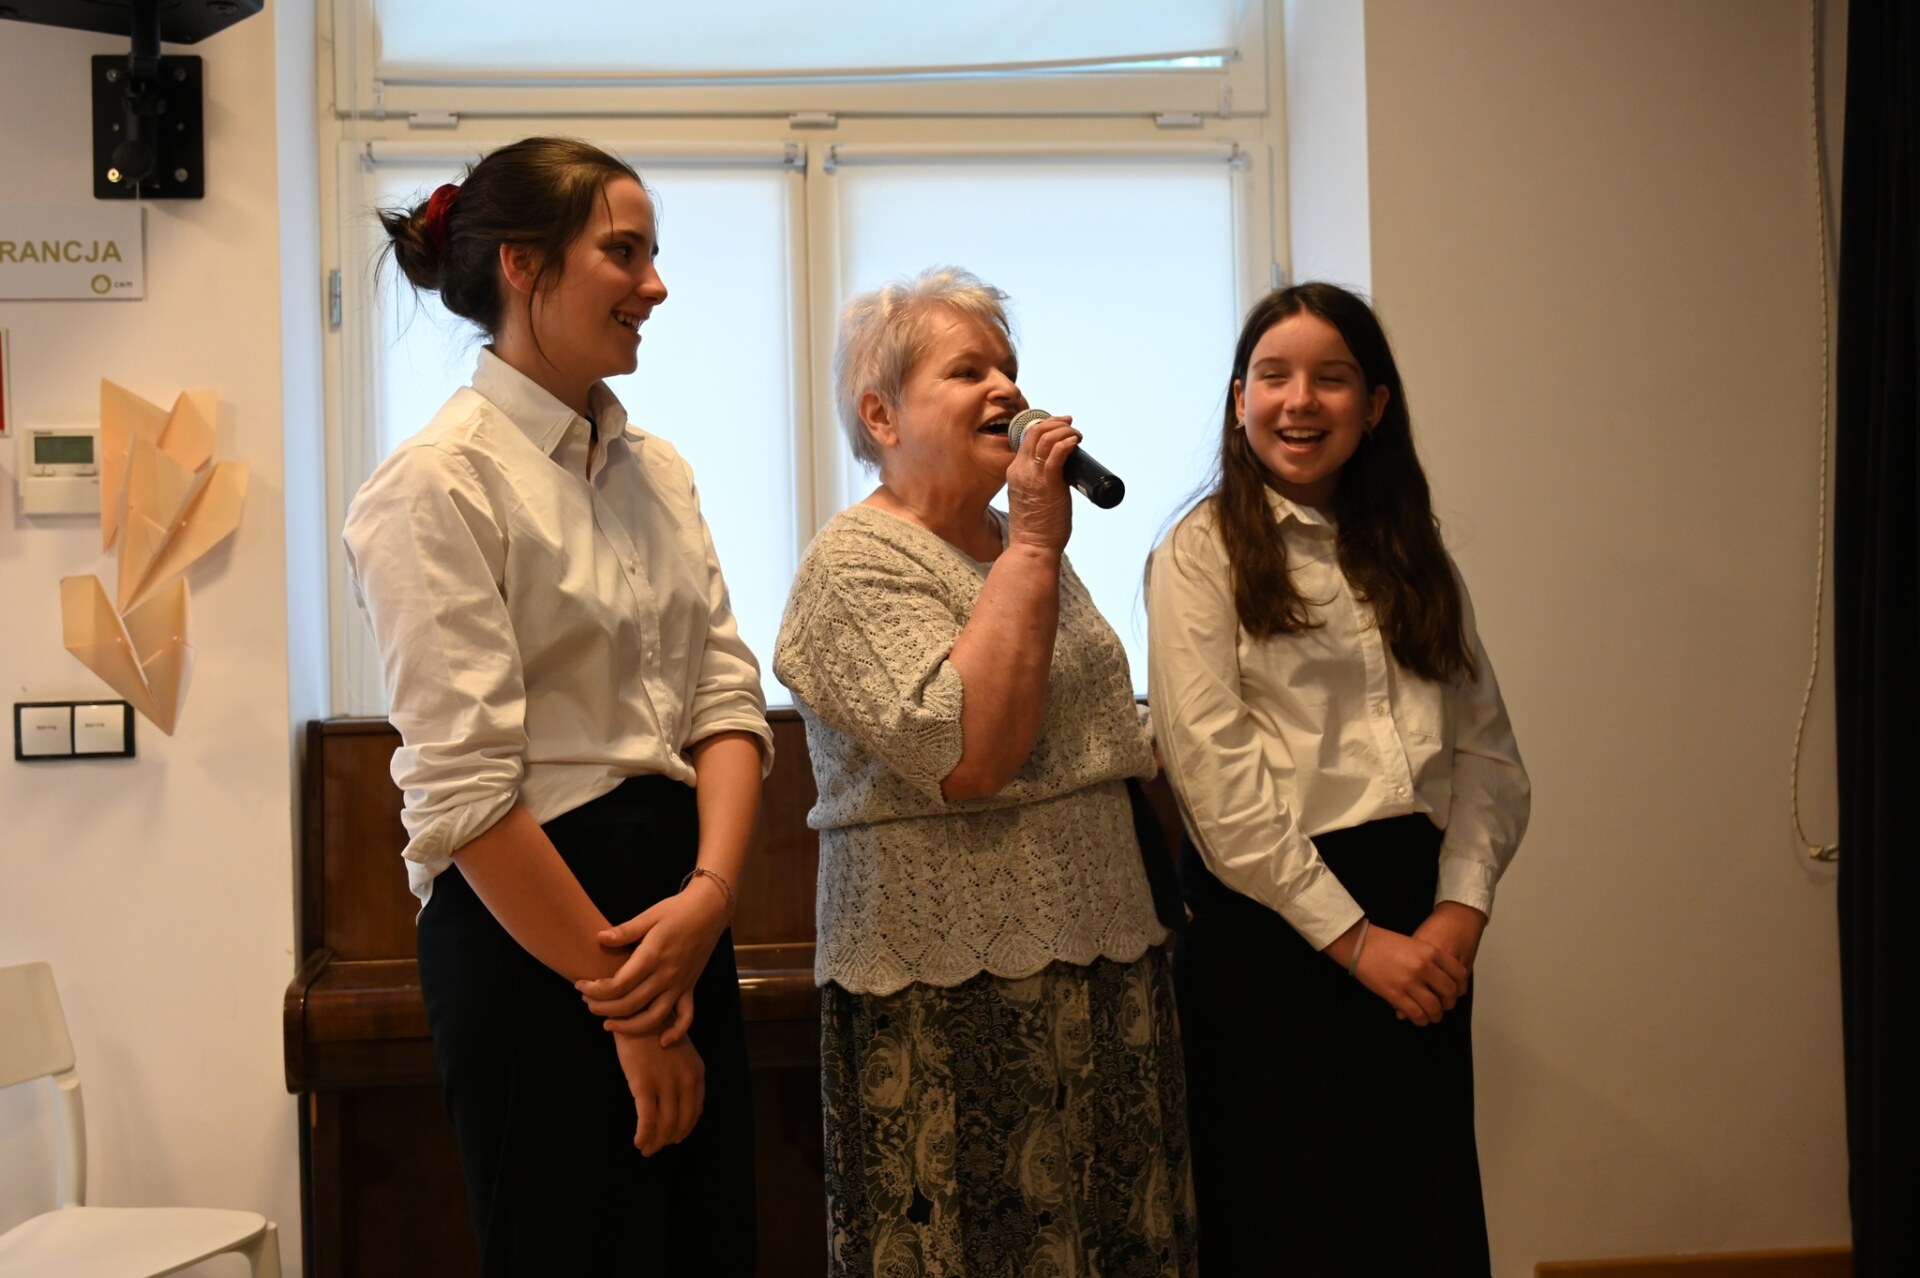 Dwie młode kobiety i seniorka śpiewają piosenkę. Seniorka trzyma mikrofon.